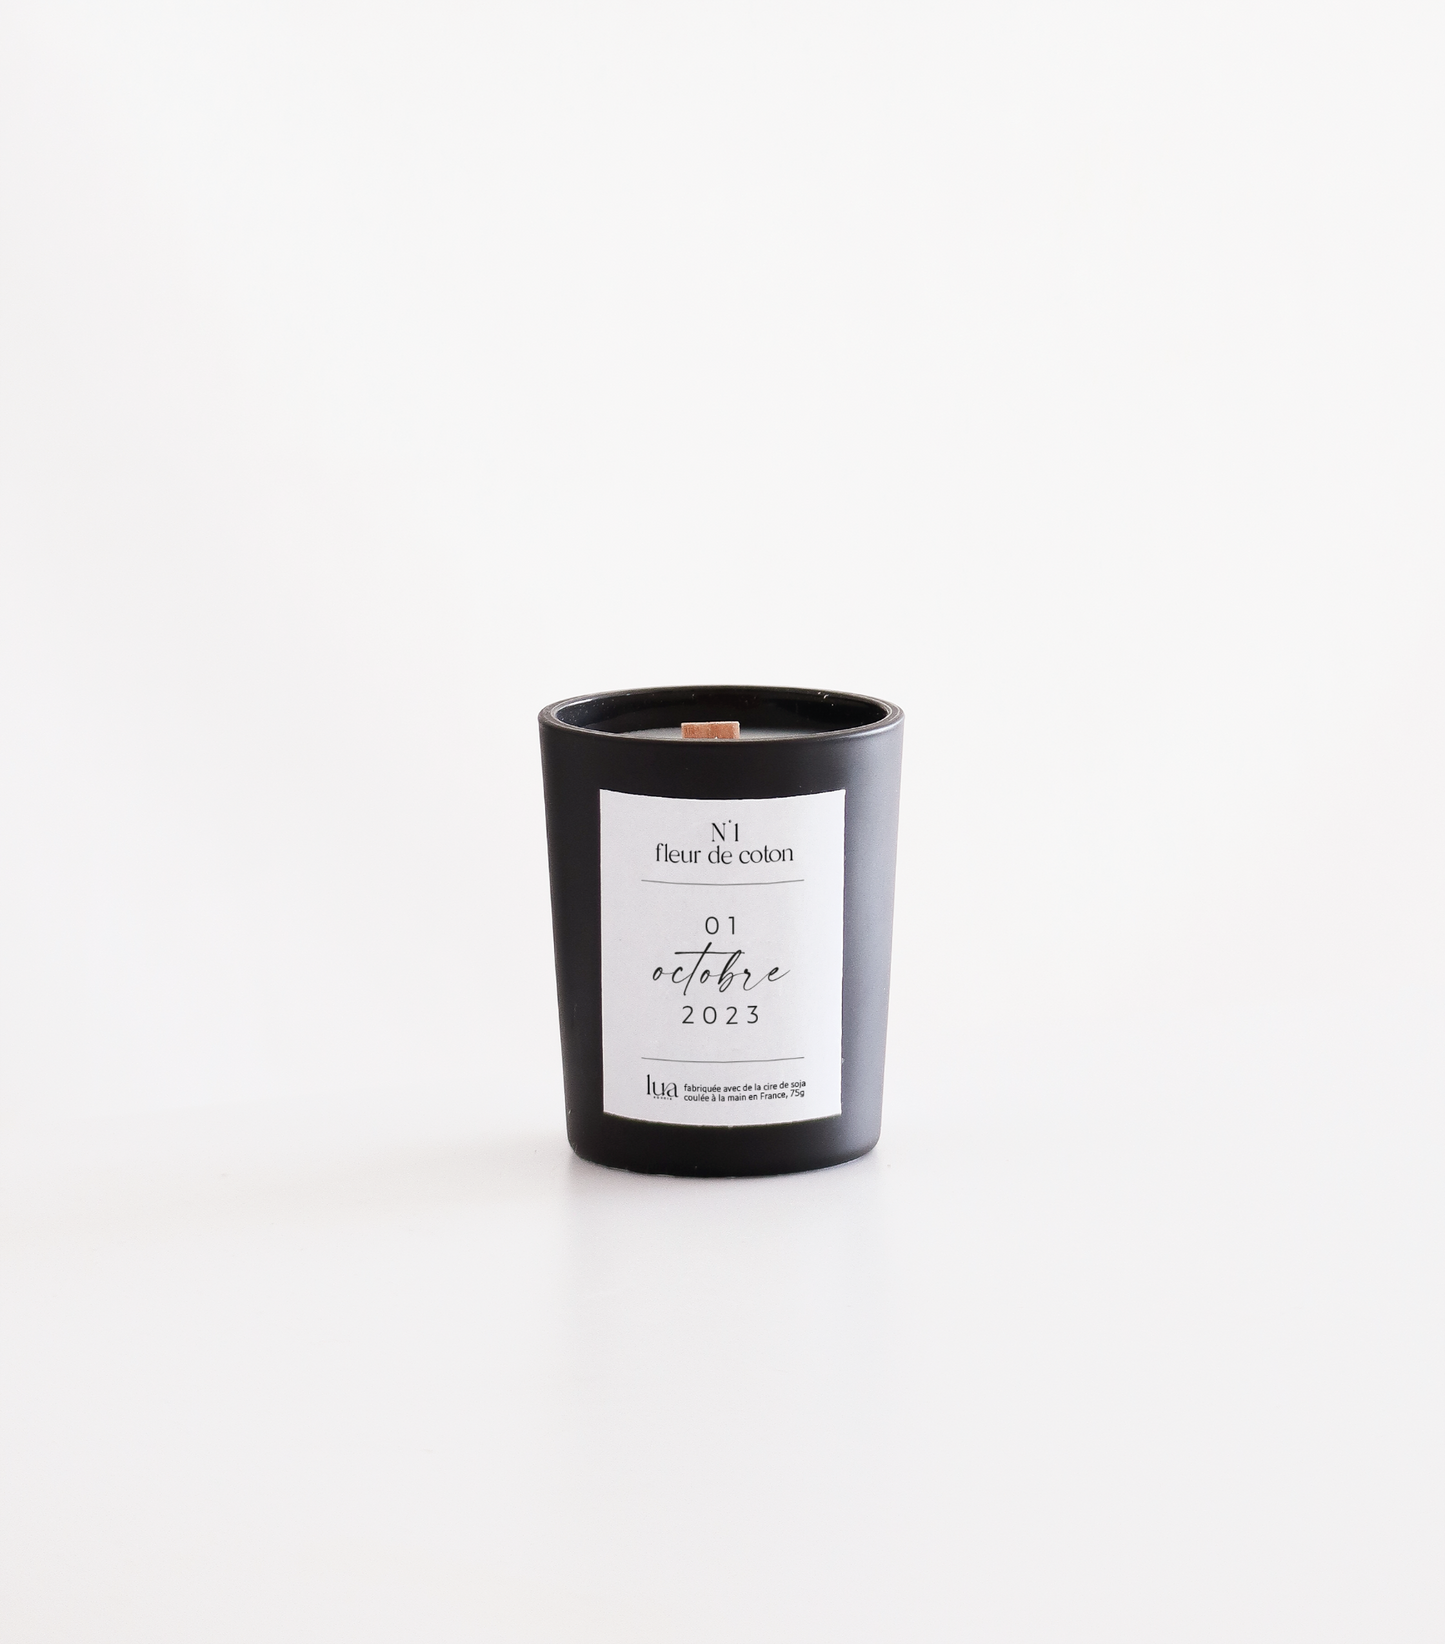 Bougie Lua naturelle et parfumée, contenant noir, parfum de Grasse. Fabriquée à Agen. 